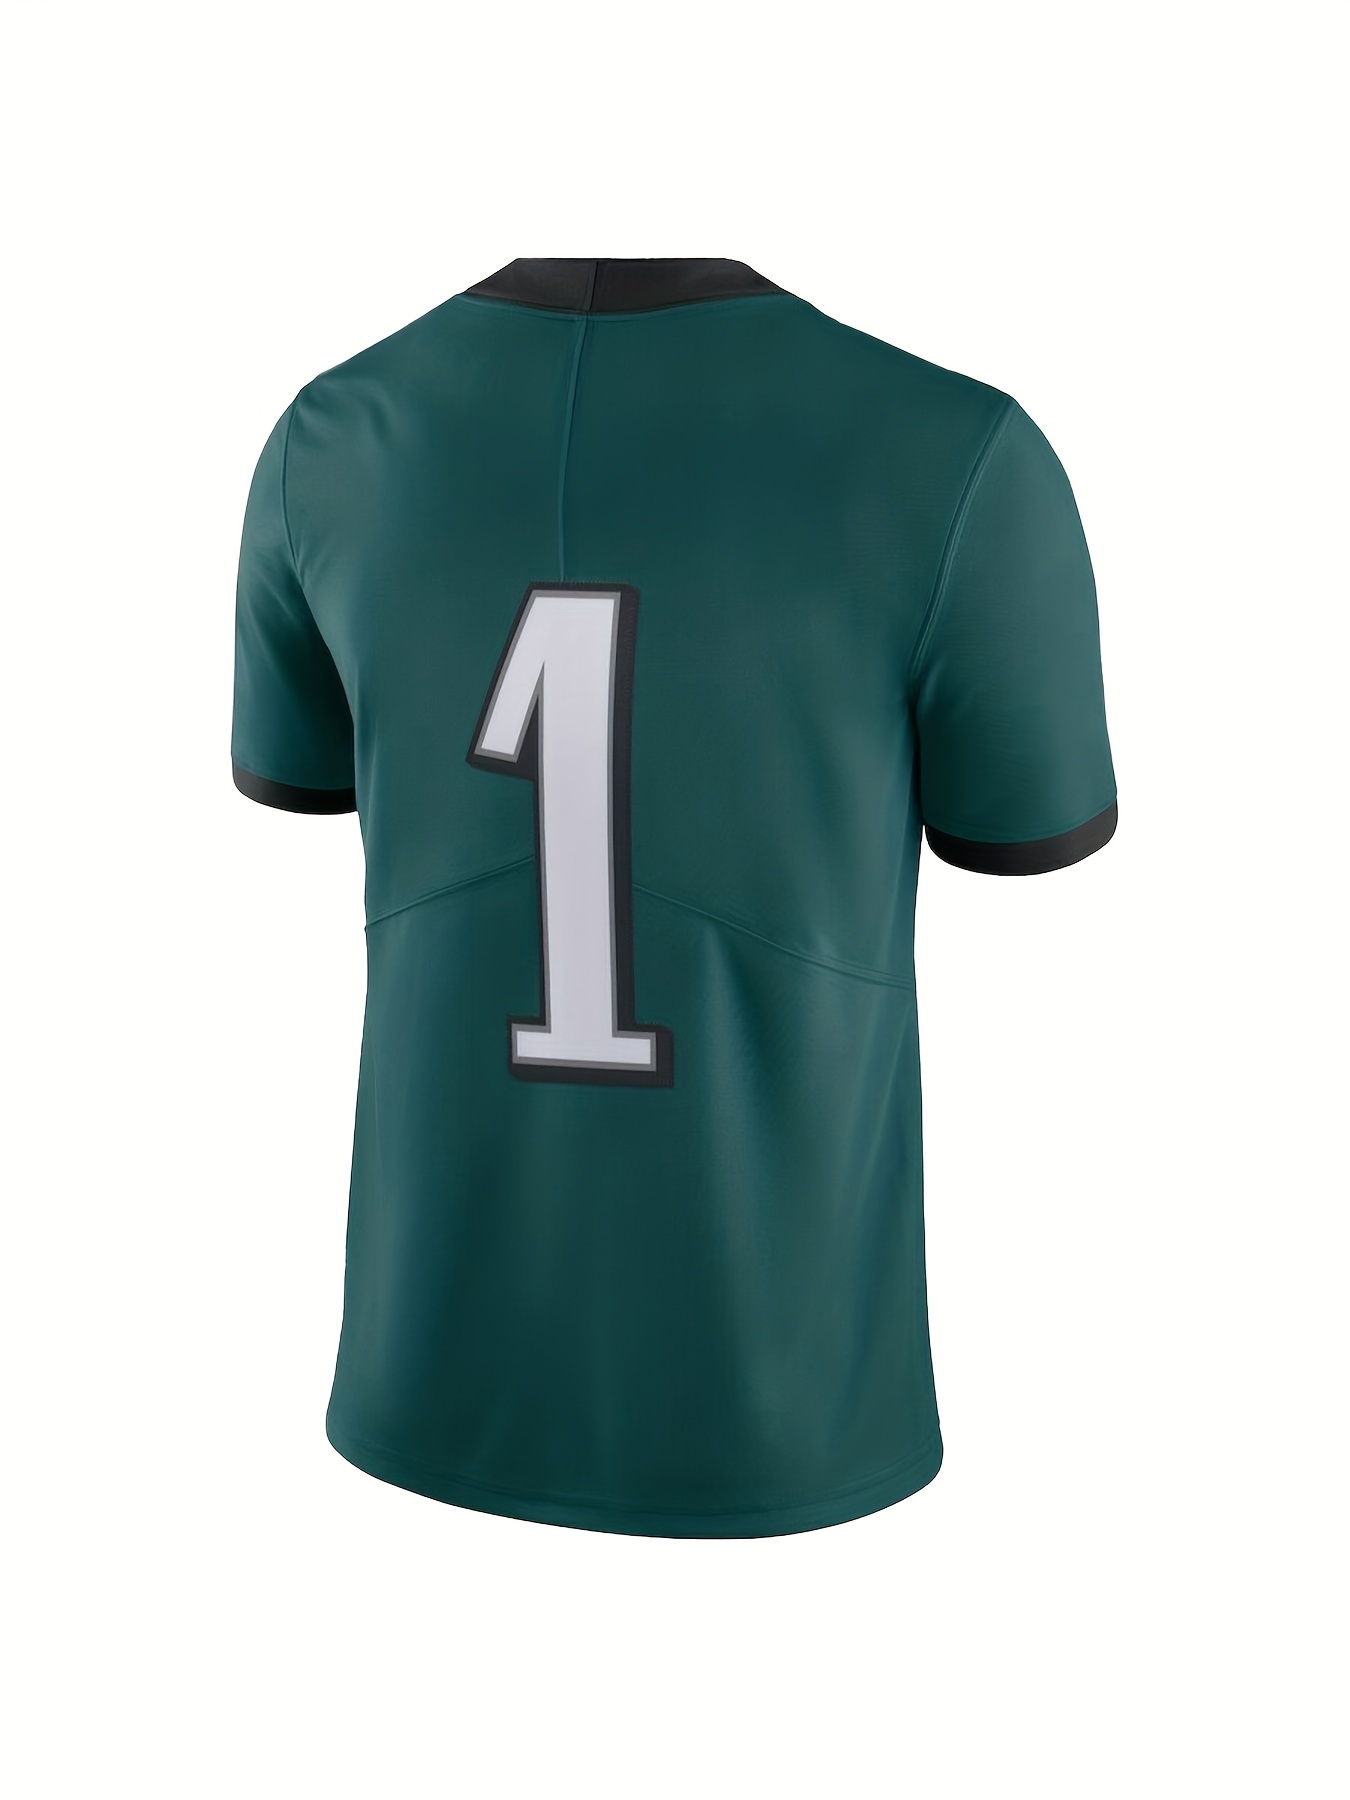 25 sports jersey football number' Men's T-Shirt